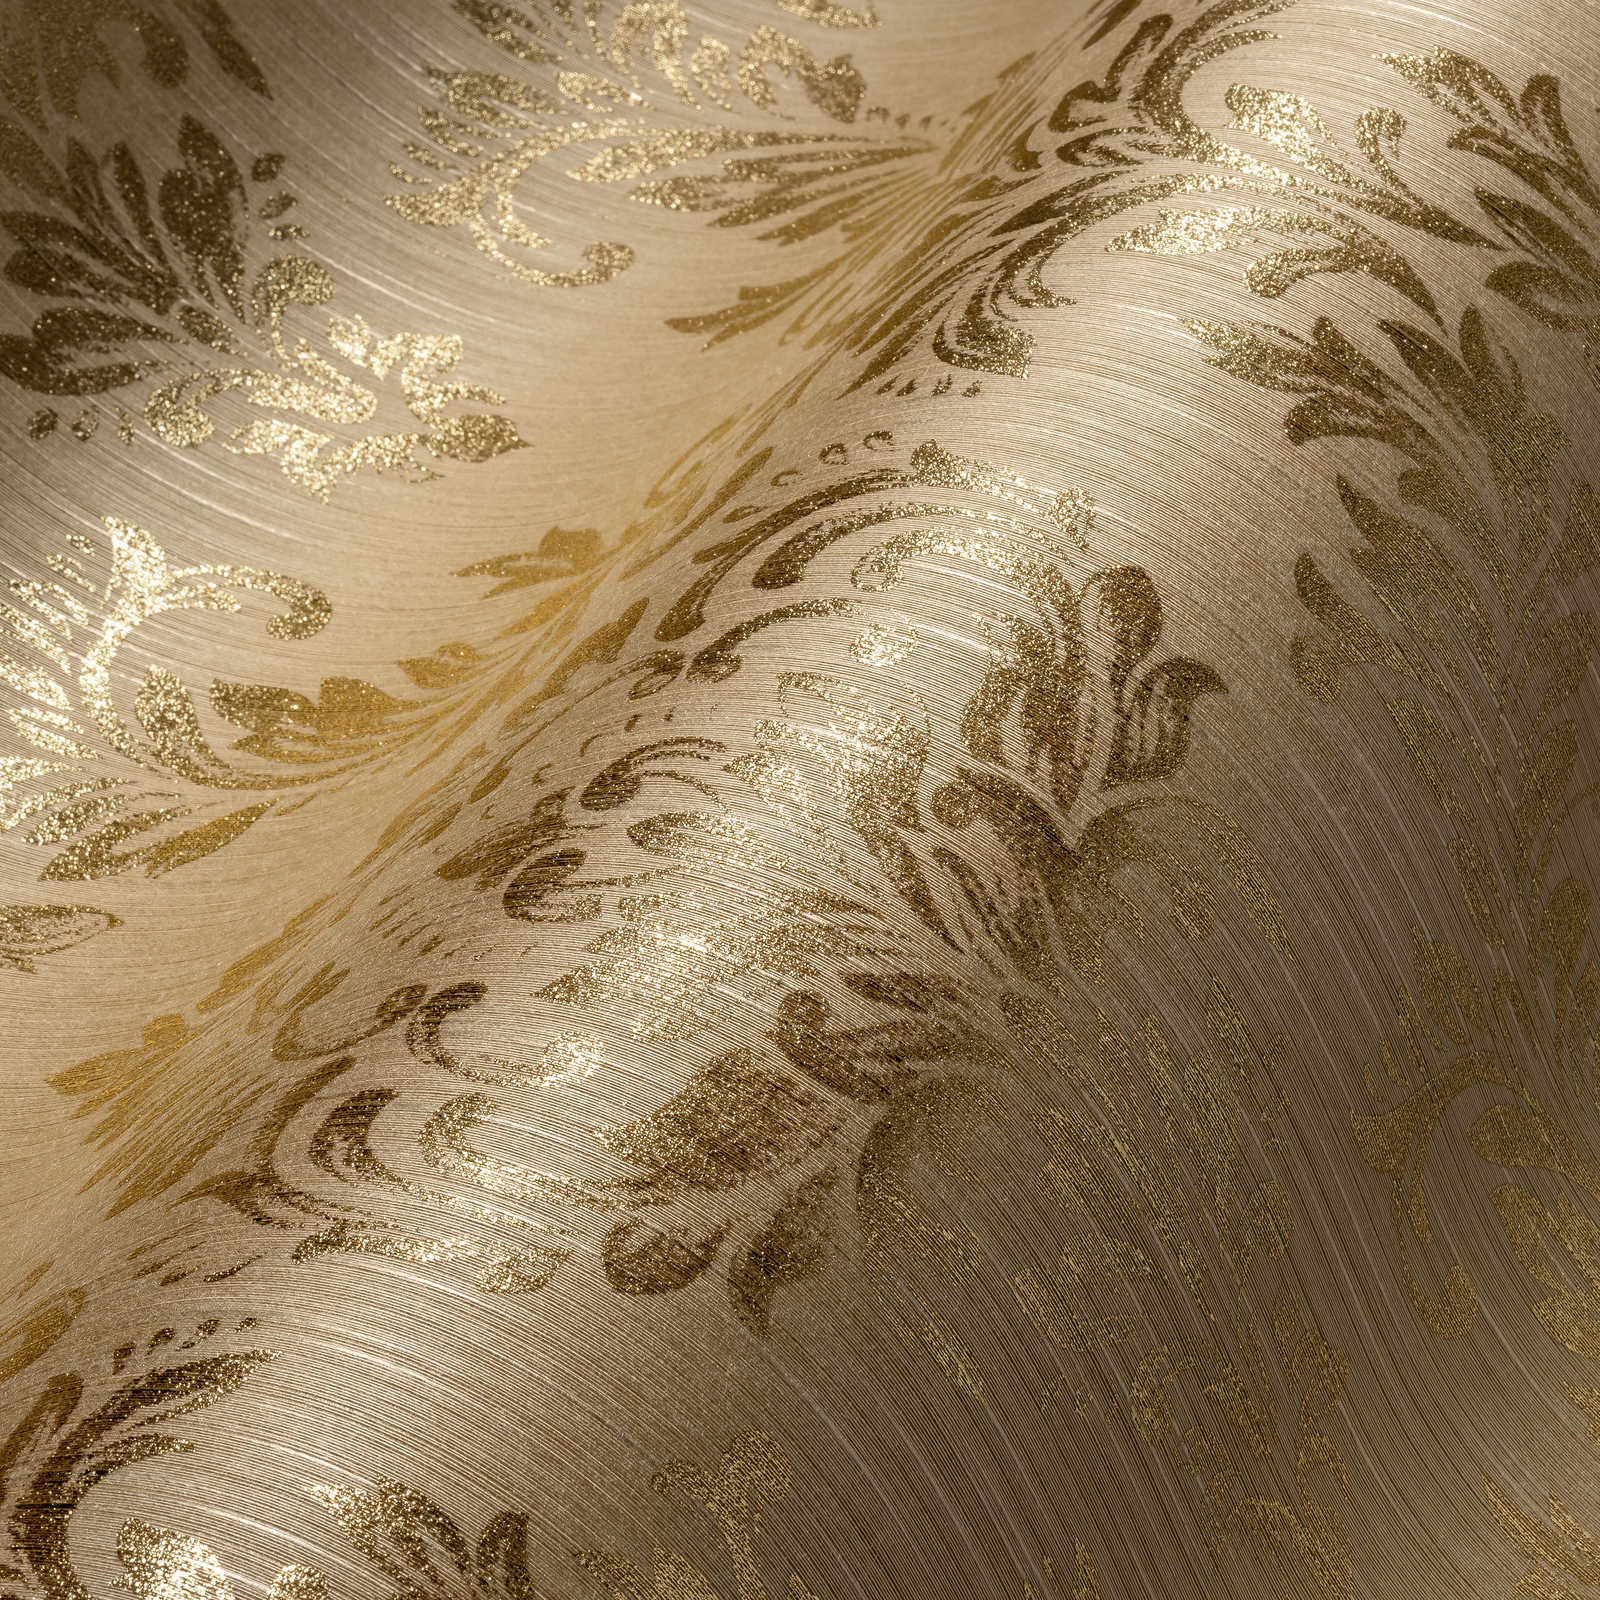             Papel pintado ornamental floral con efecto de brillo dorado - oro, beige
        